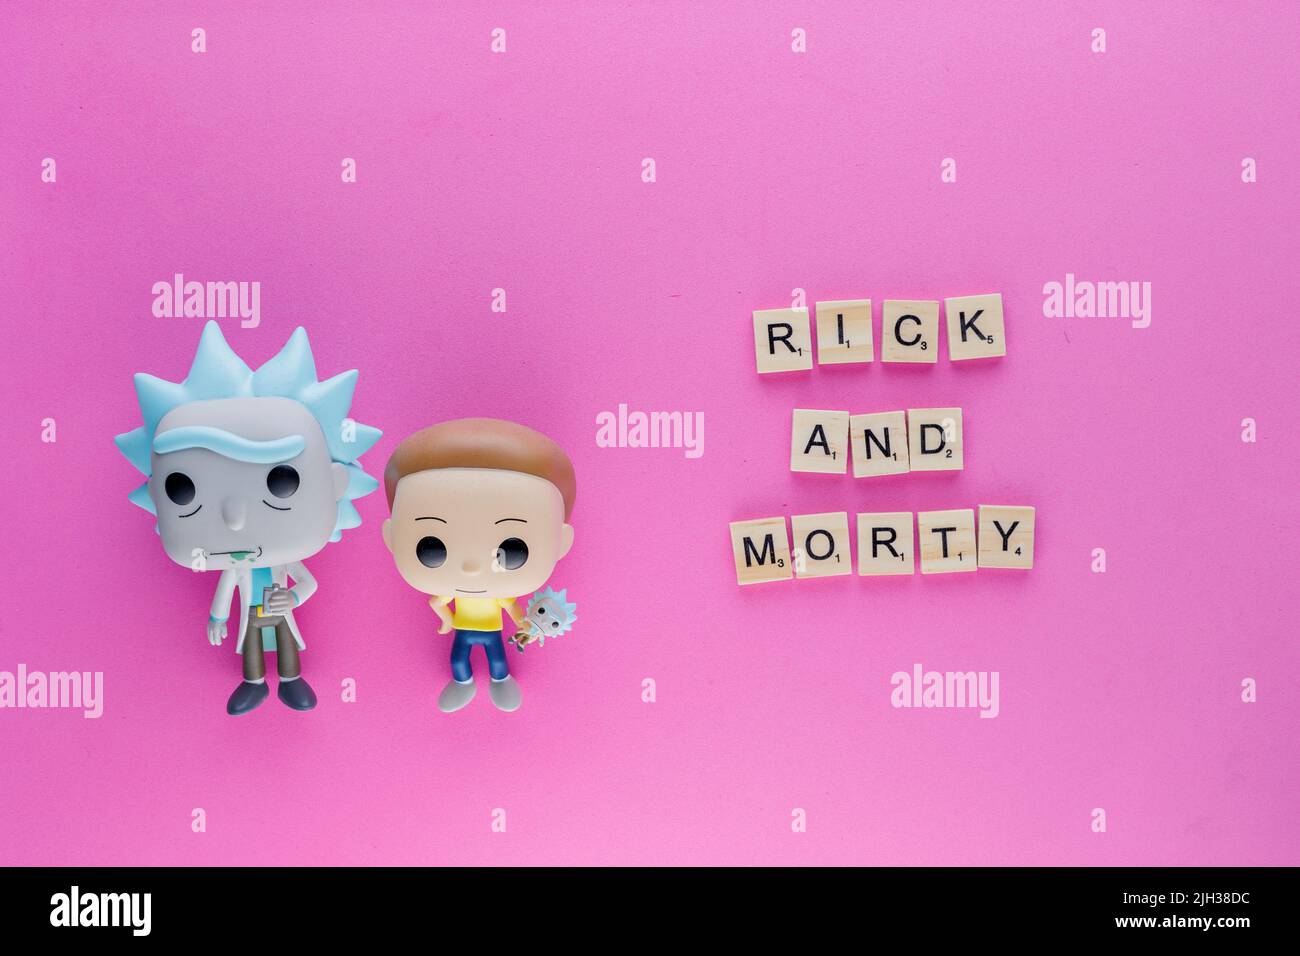 Rick und Morty Funko Pop Figuren auf einem rosa flachen Hintergrund Stockfoto